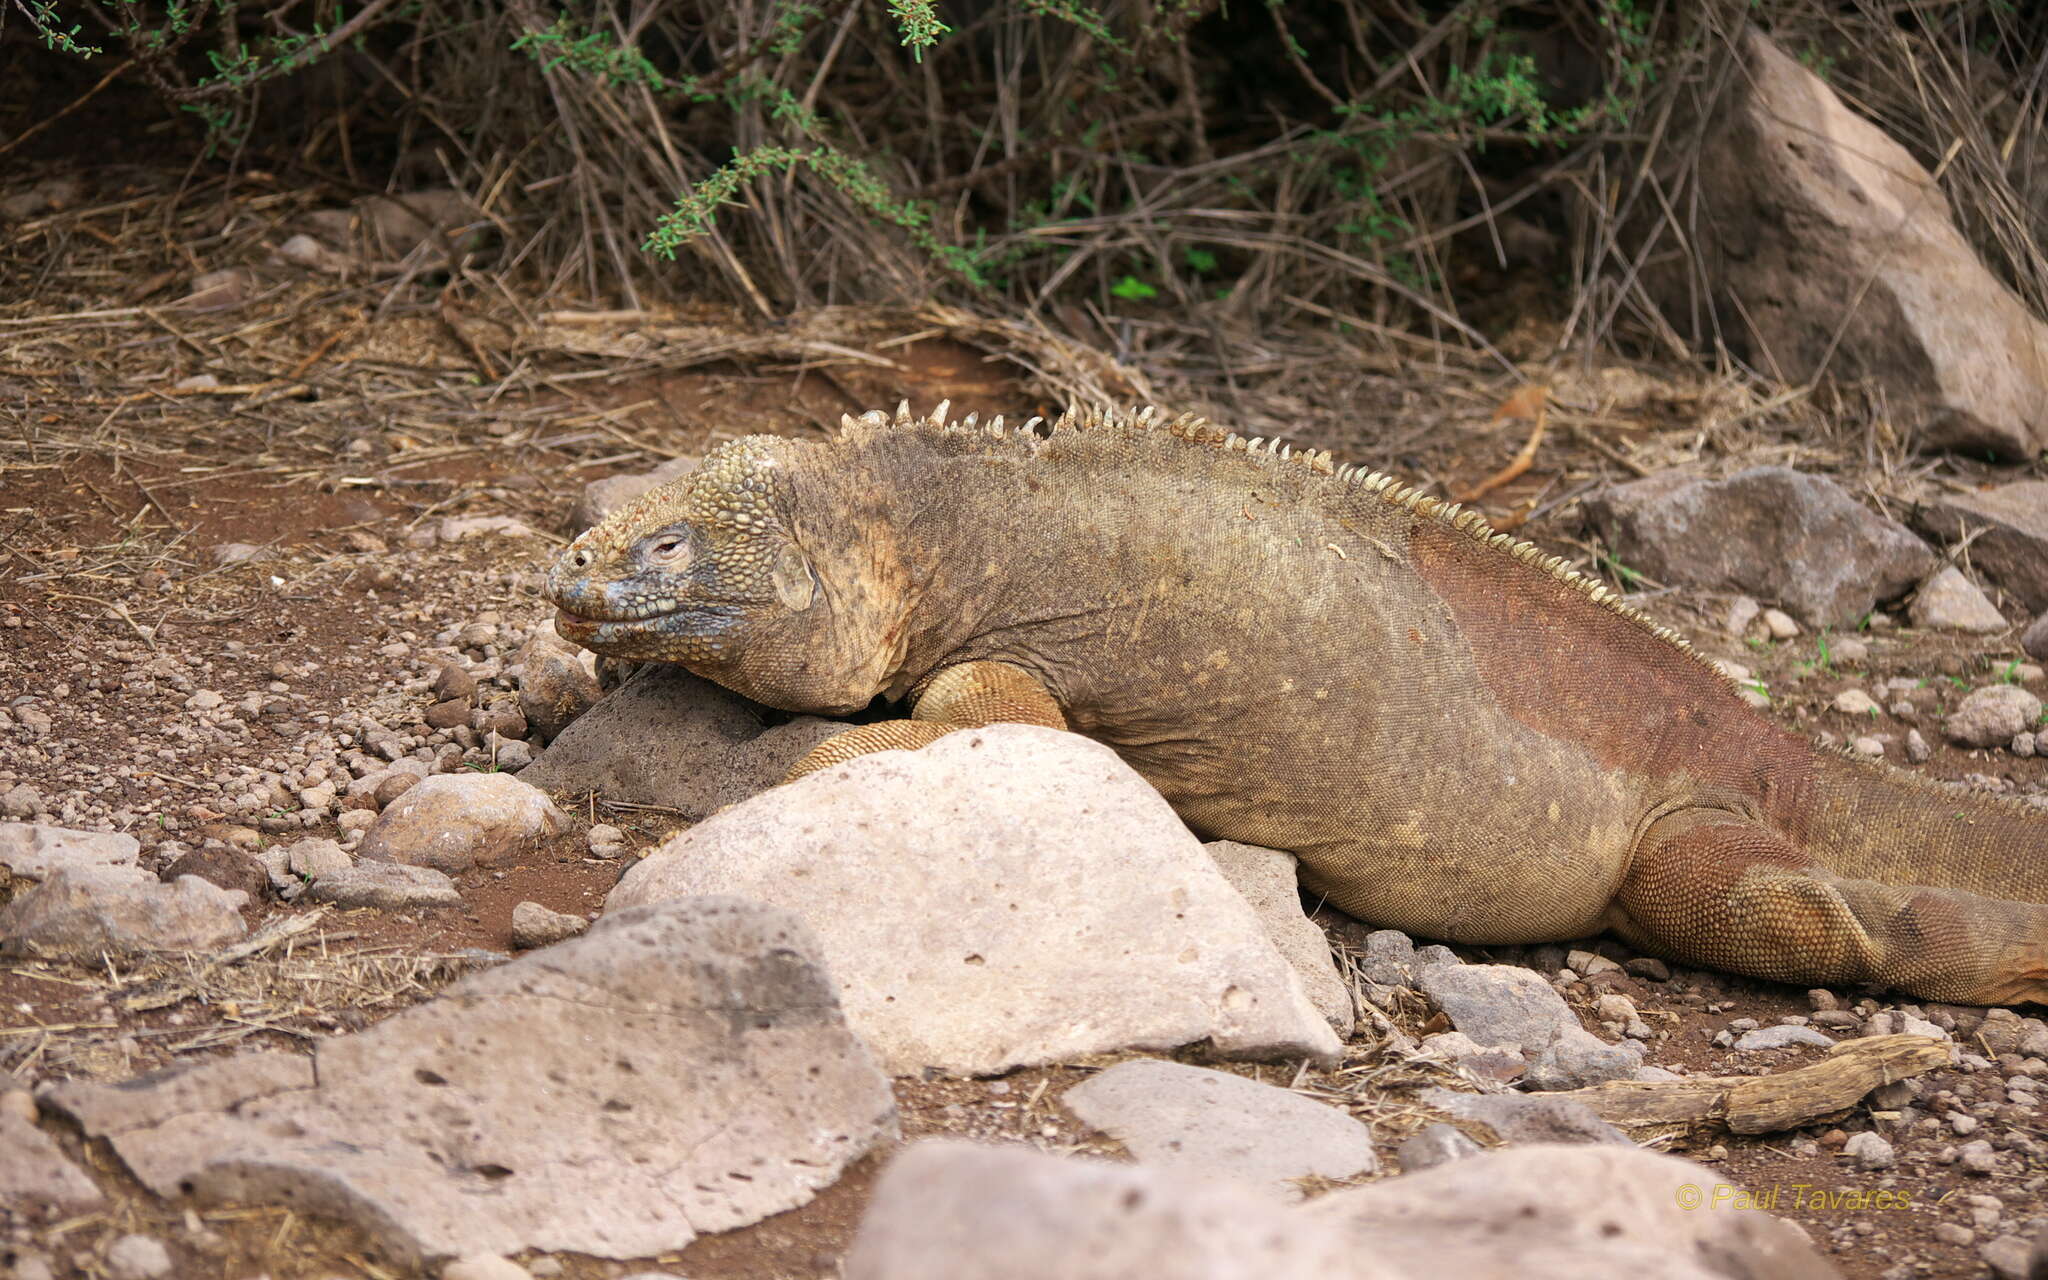 Image of Santa Fe Land Iguana